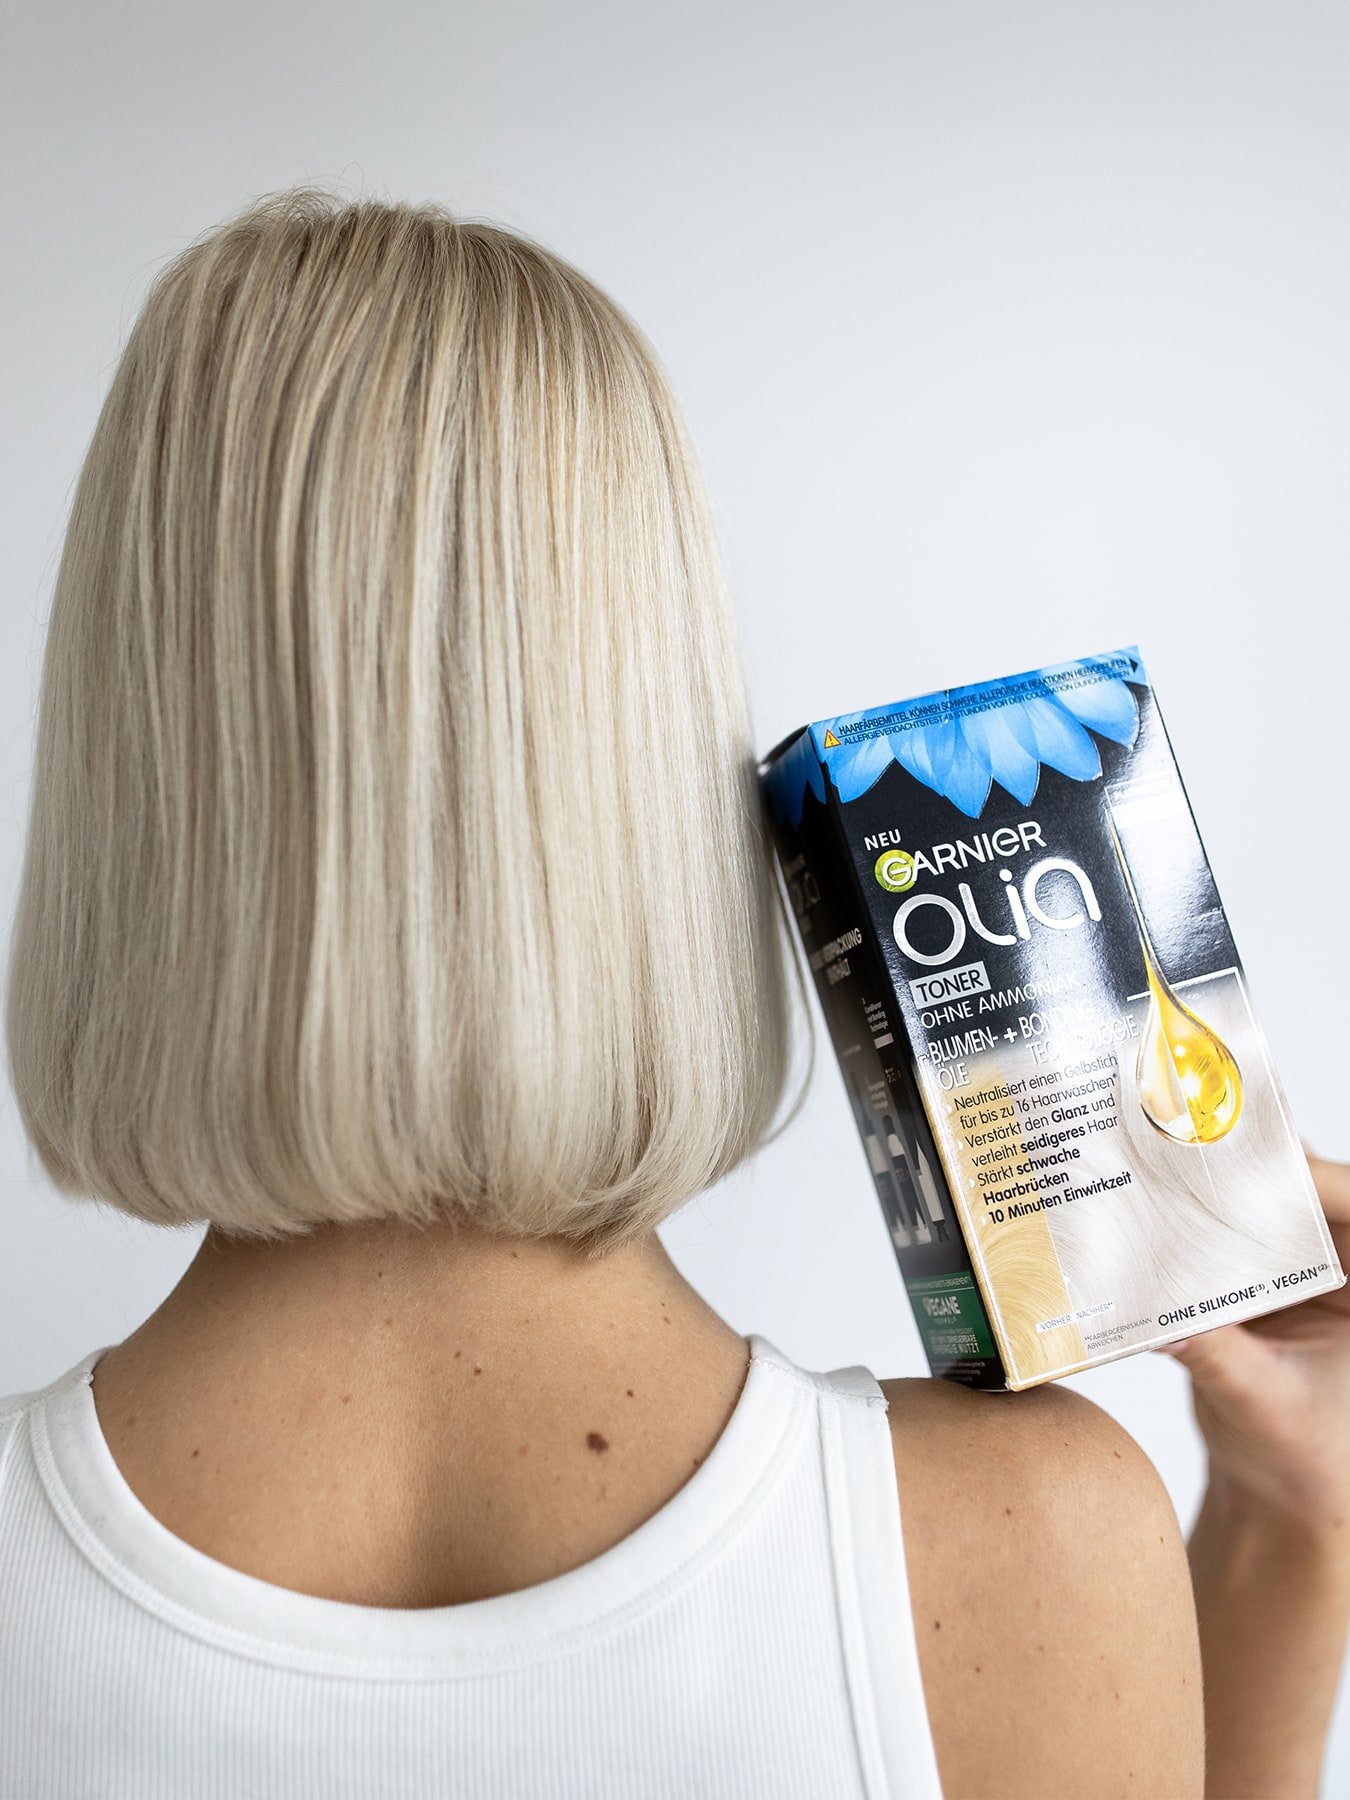 Kopf & Schulterbereich einer Frau mit langen blonden Haaren die das Produkt in ihren Händen hält